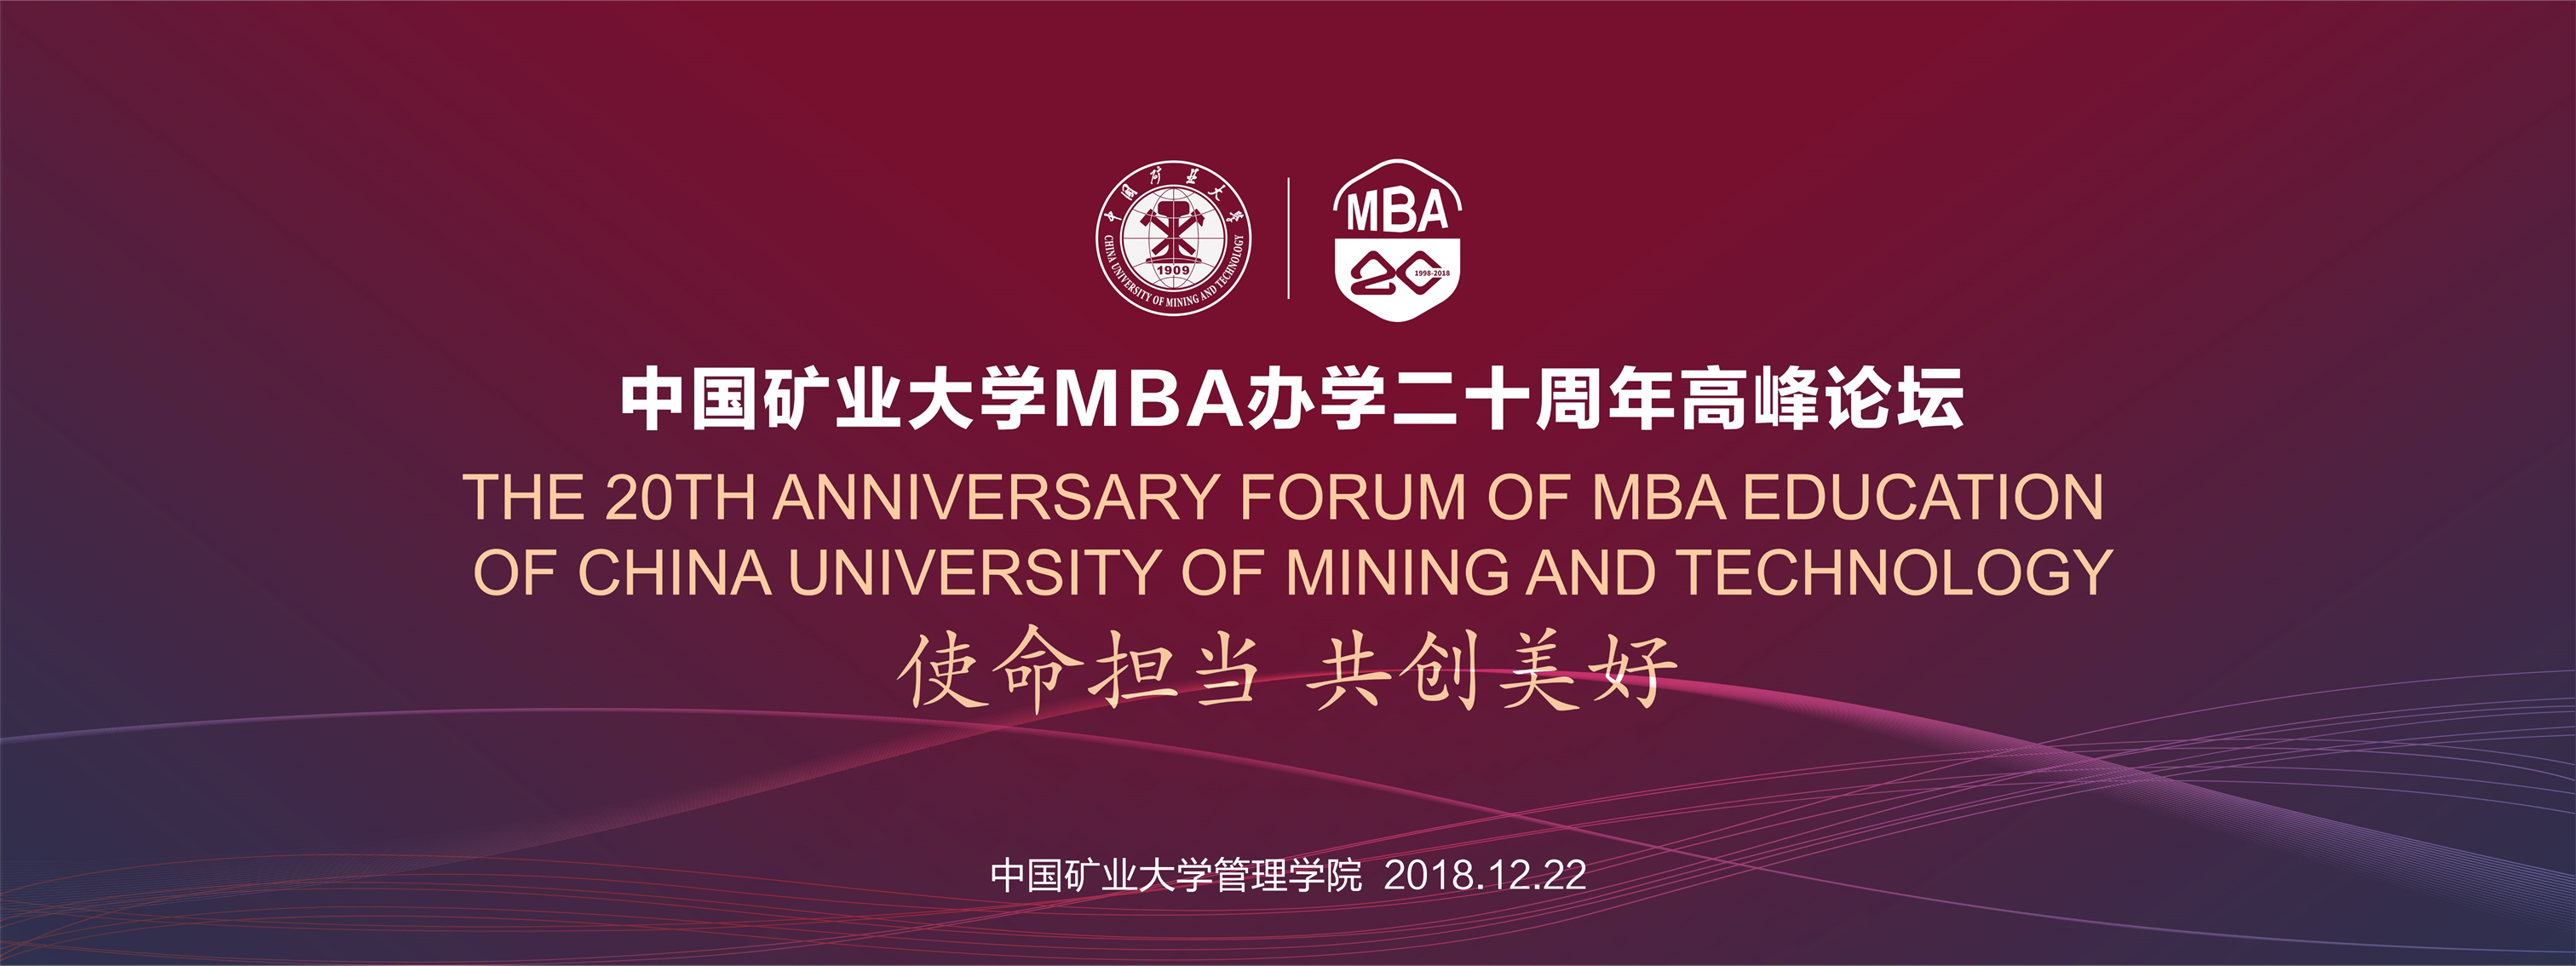 中国矿业大学MBA办学二十周年...